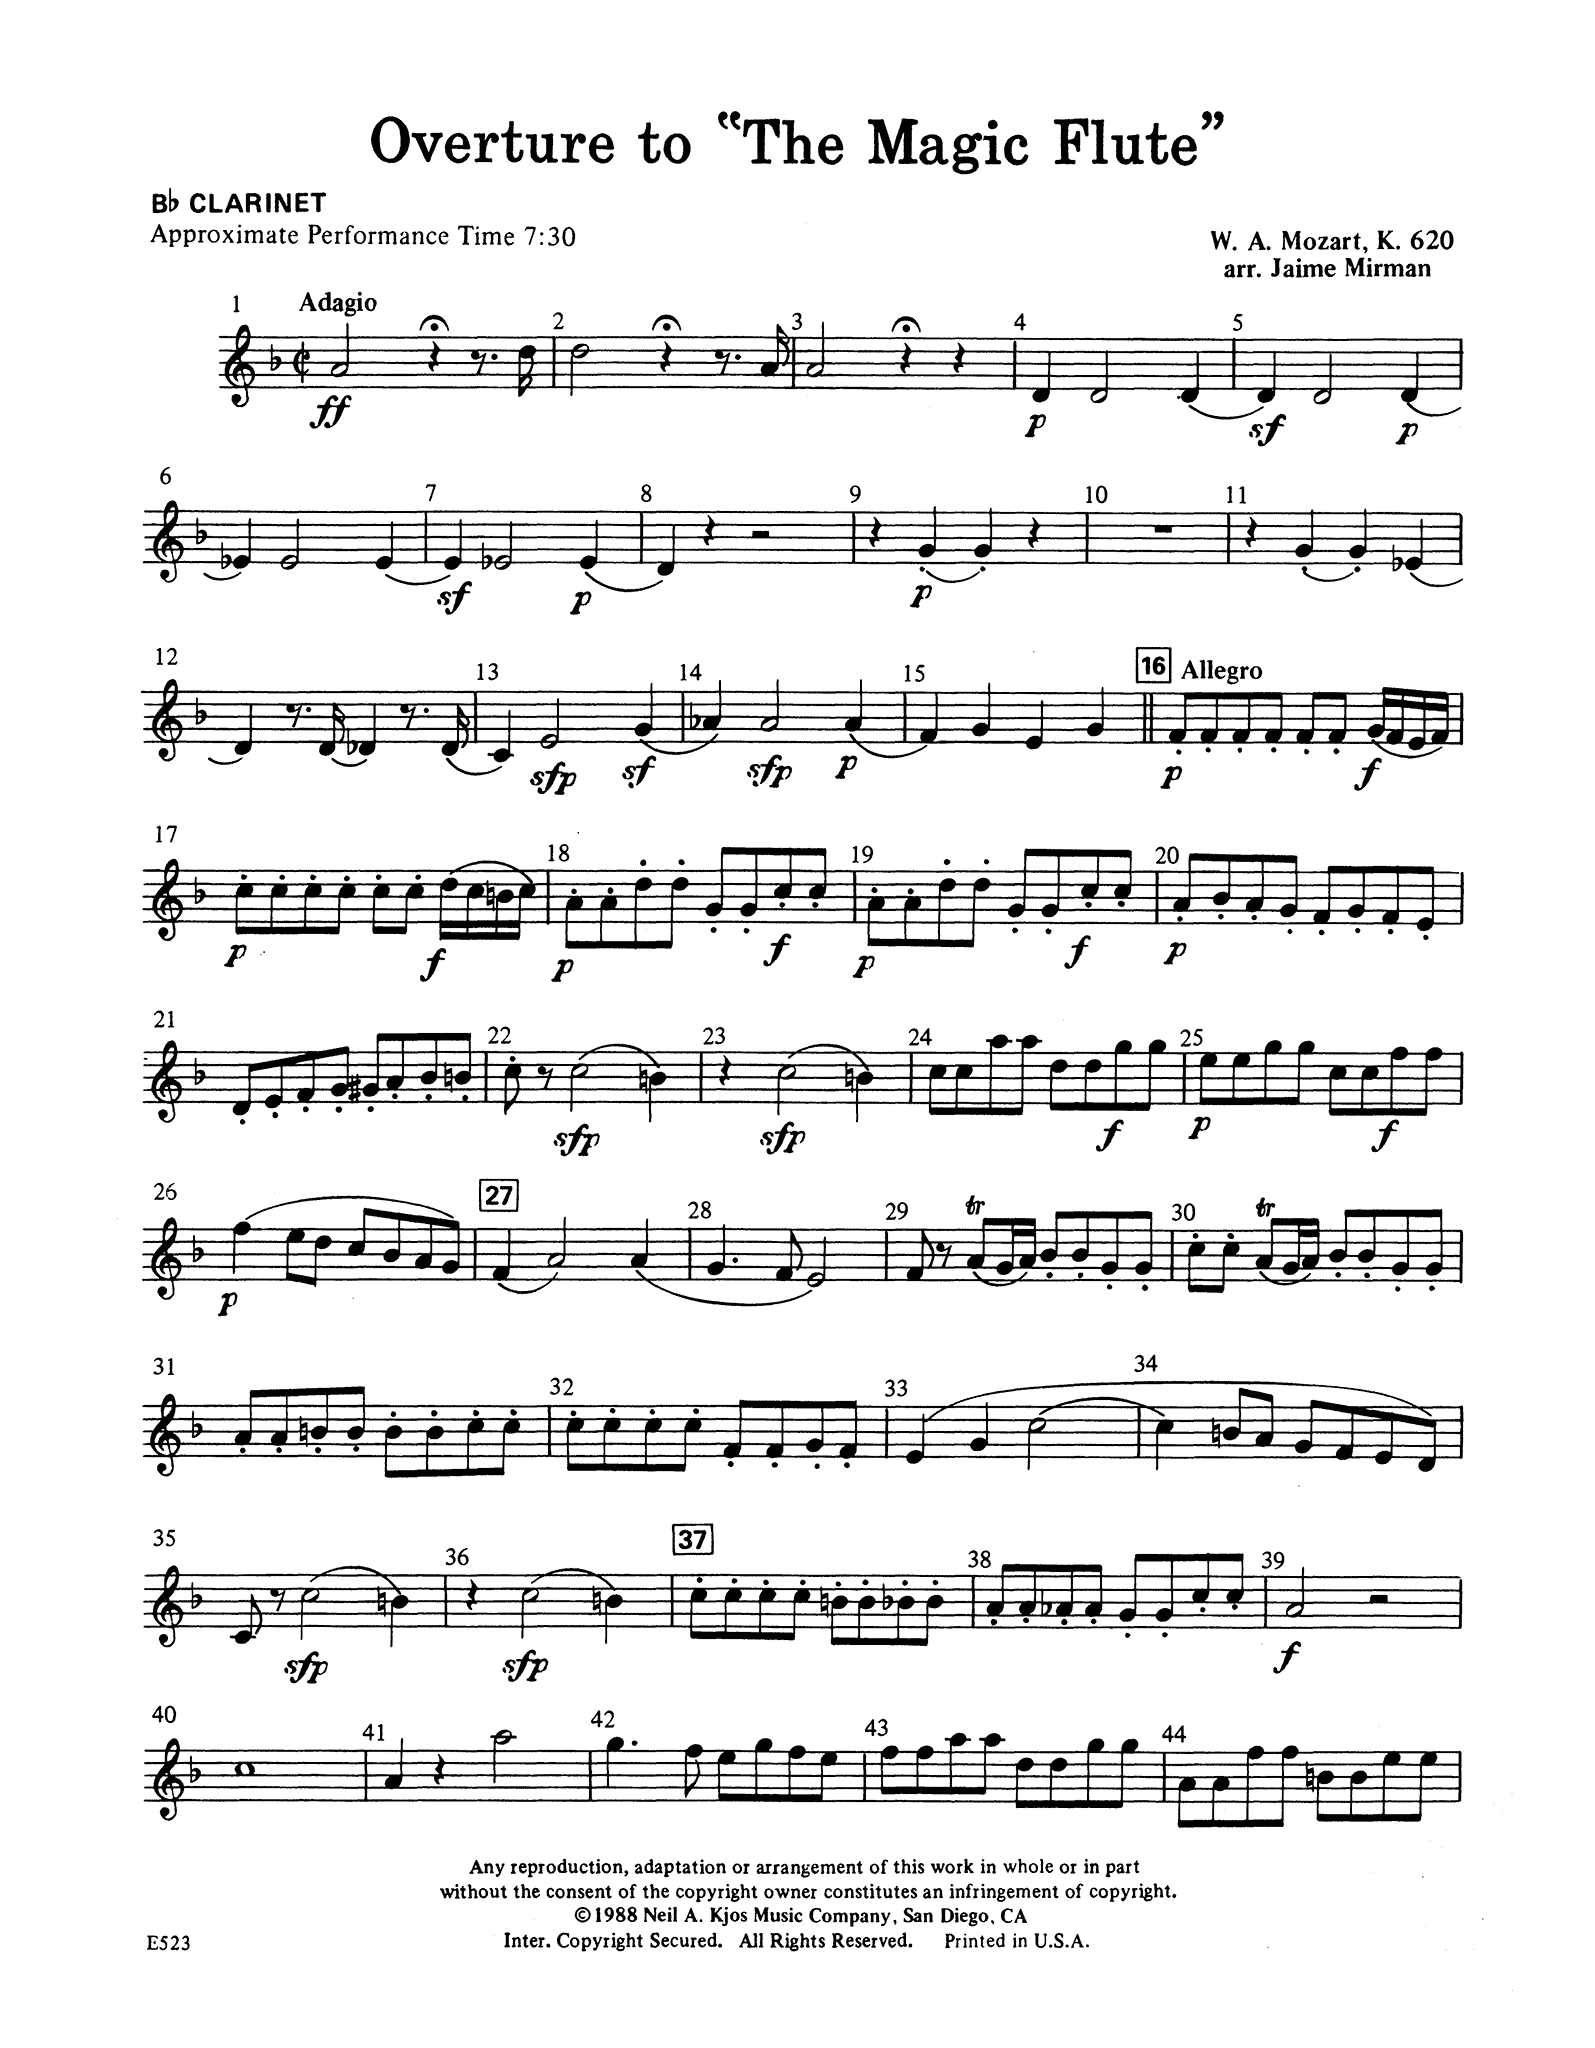 Mozart Overture to ‘Die Zauberflöte’, K. 620 wind quintet arrangement clarinet part